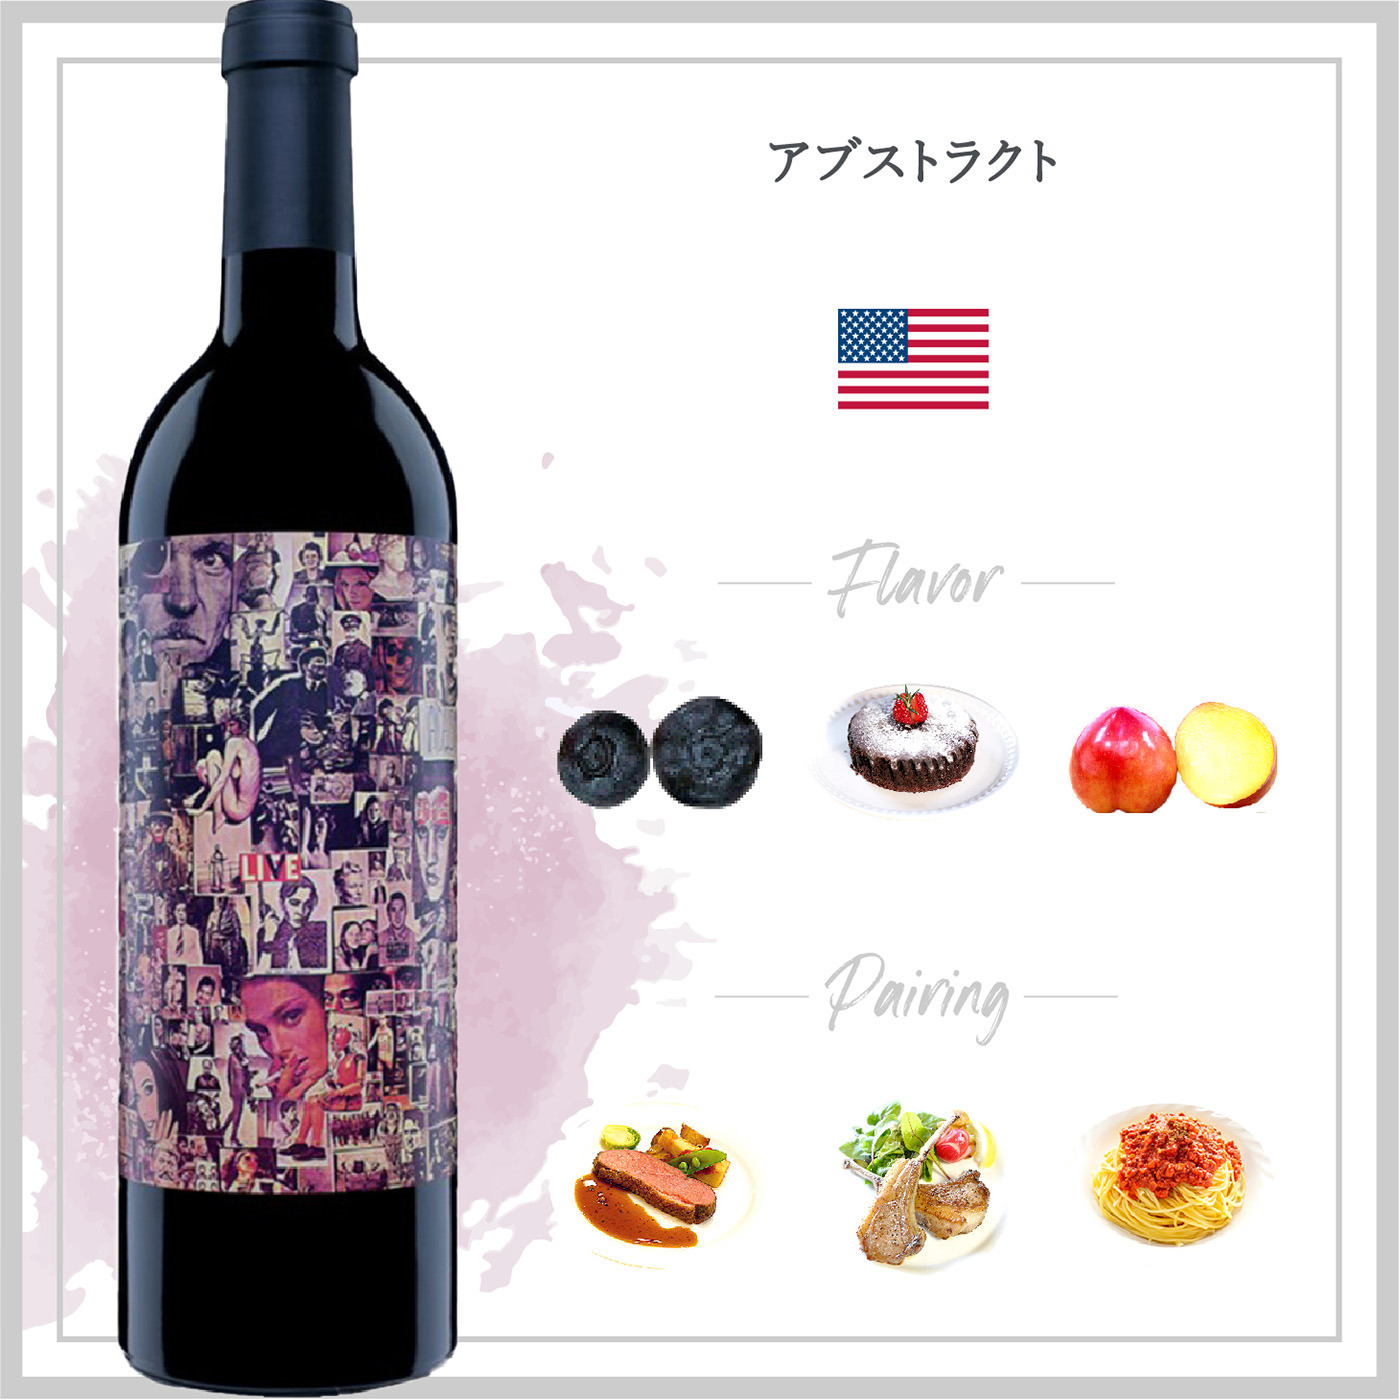 アブストラクト (2021) | ピーロート・ジャパン ハイエンド・高級ワイン通販